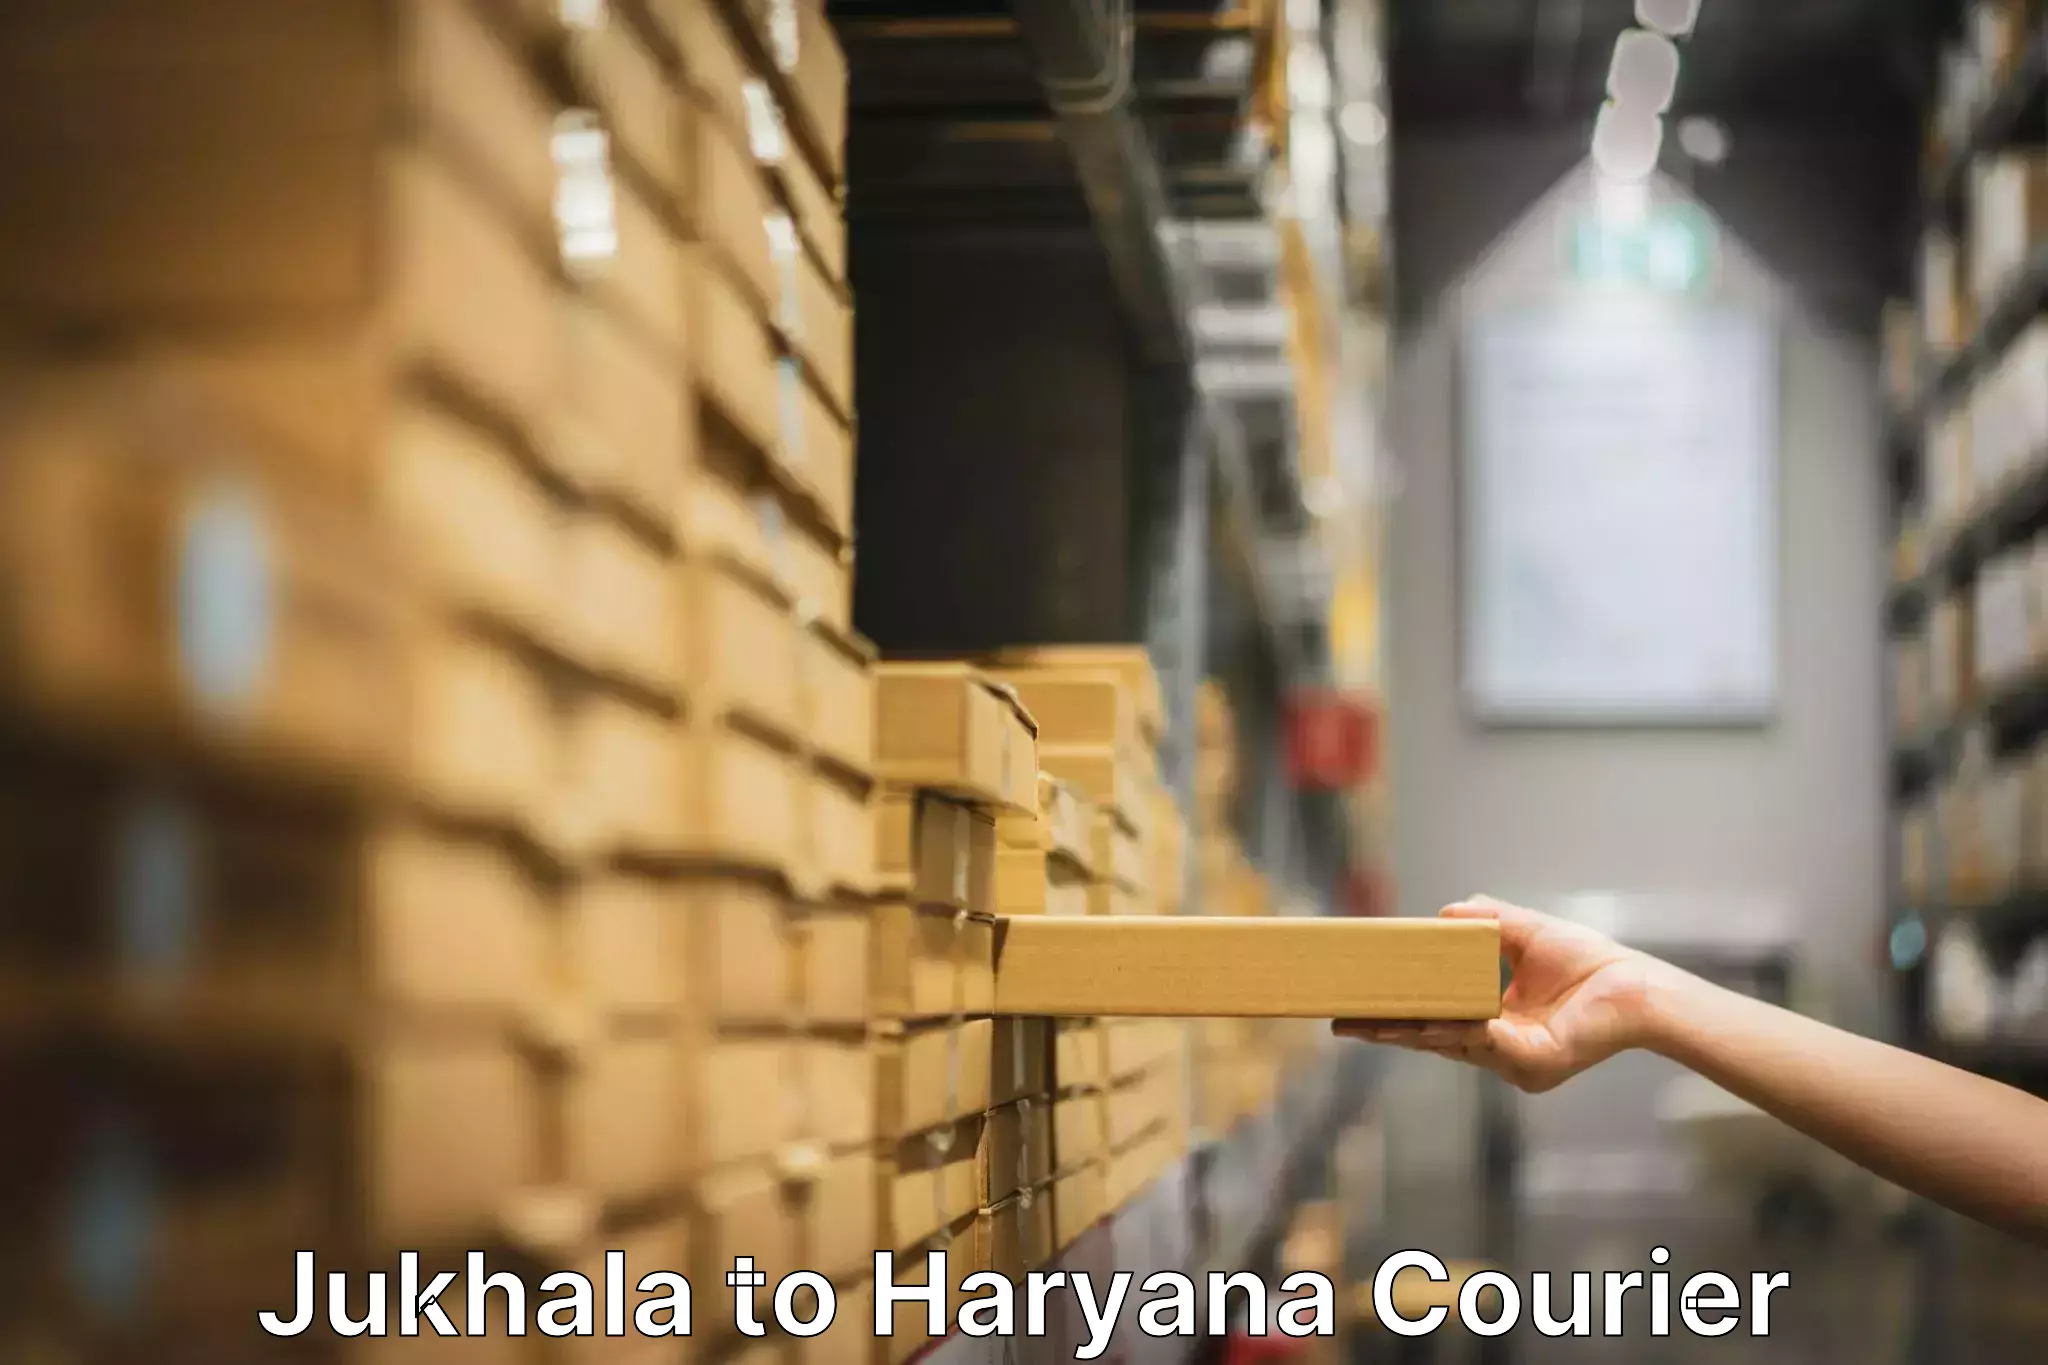 Furniture delivery service Jukhala to Gohana